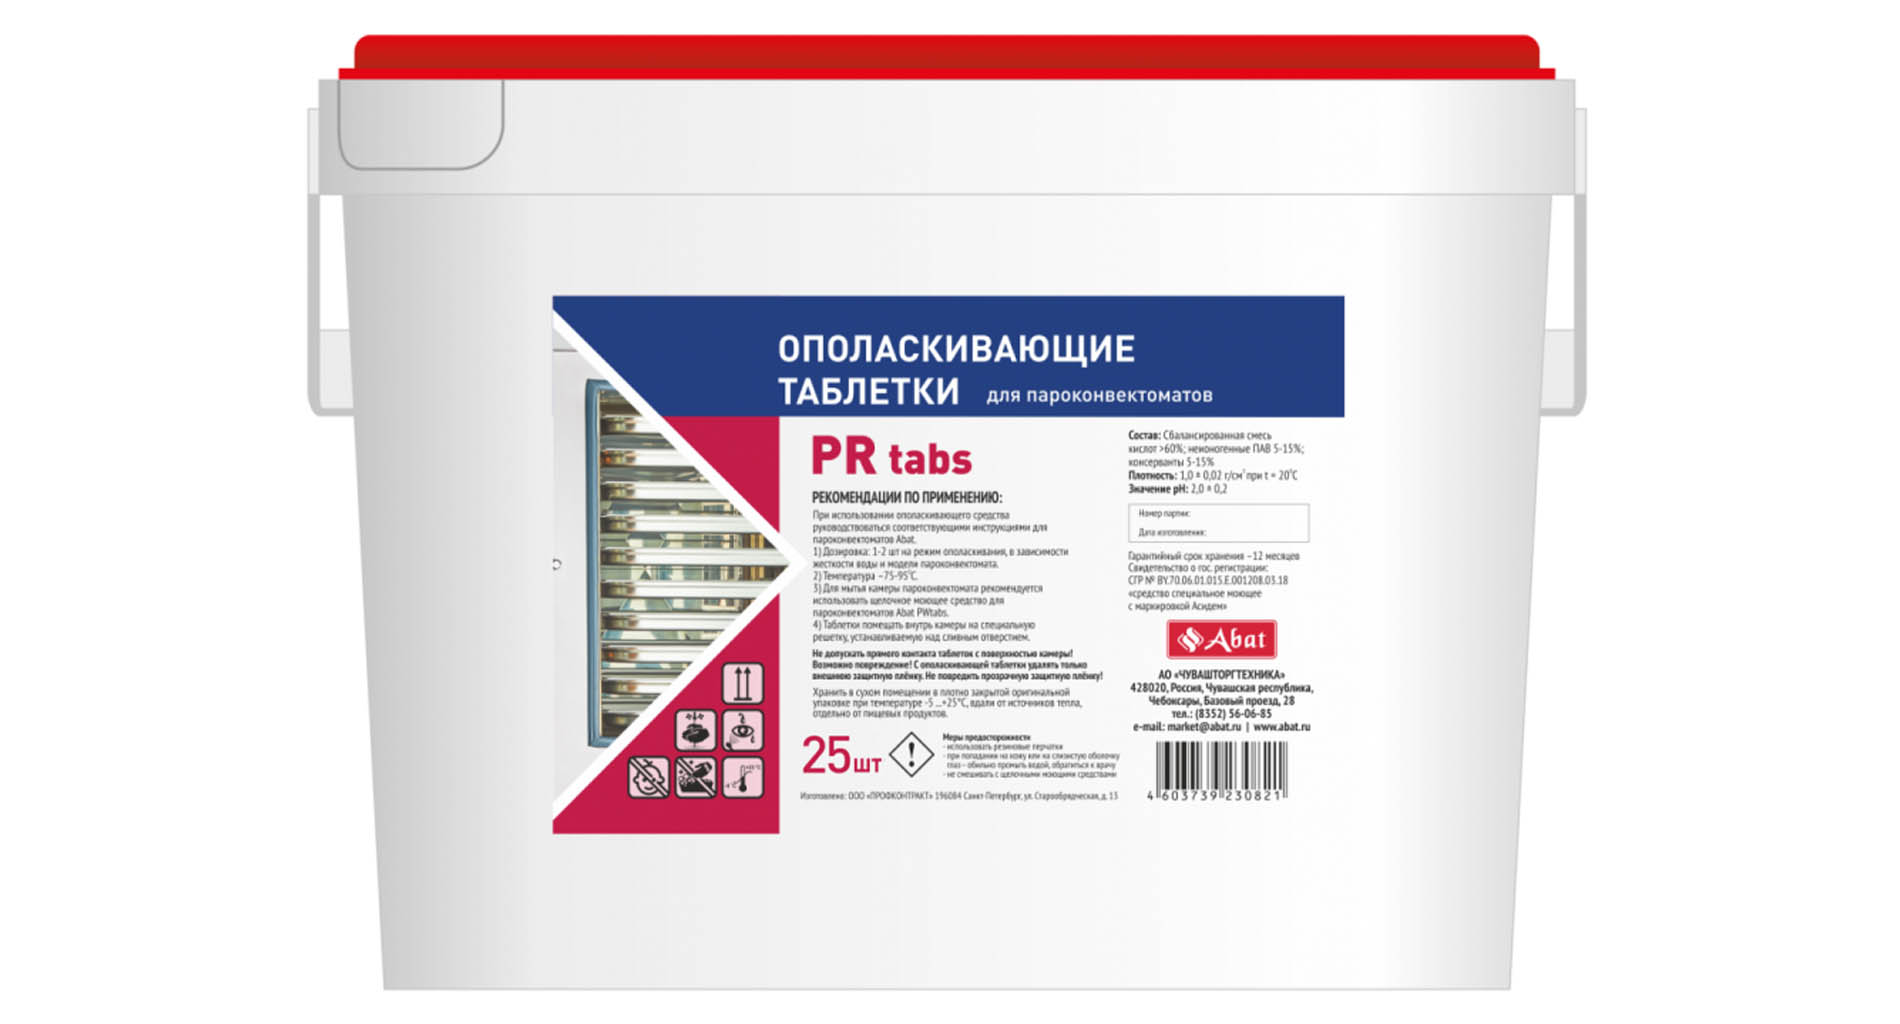 Abat PR tabs (25 шт) - ополаскивающие таблеткиAbat PR tabs (25 шт) - ополаскивающие таблетки